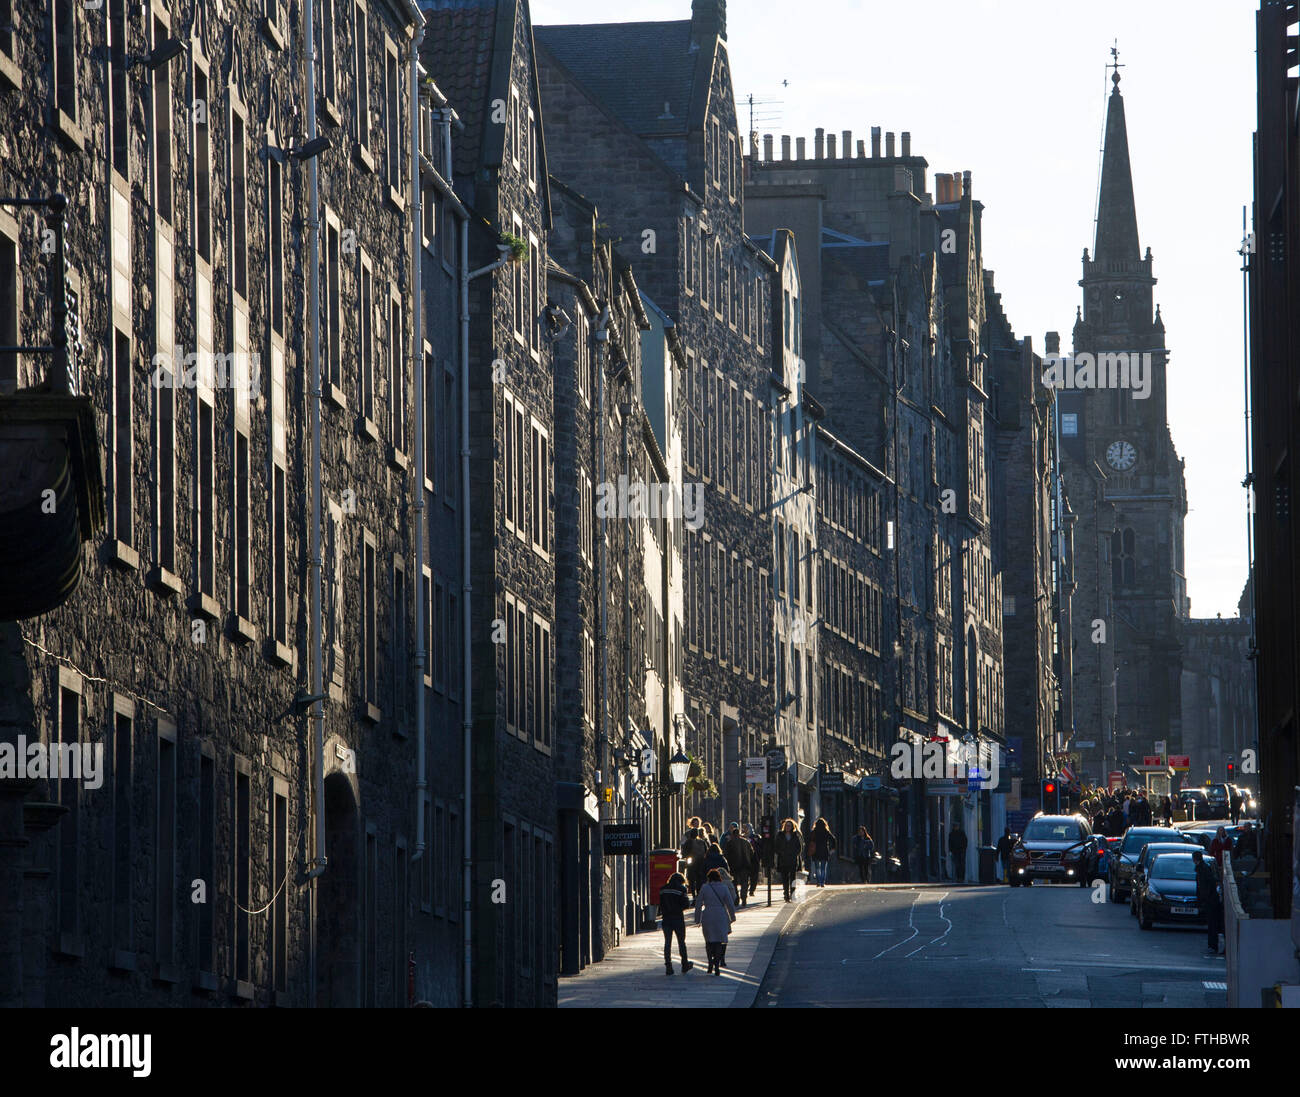 28.03.2016. Die Royal Mile/Canongate, High Street, Edinburgh. Blick von der Canongate auf der Royal Mile in Richtung Tron Kirk. Stockfoto